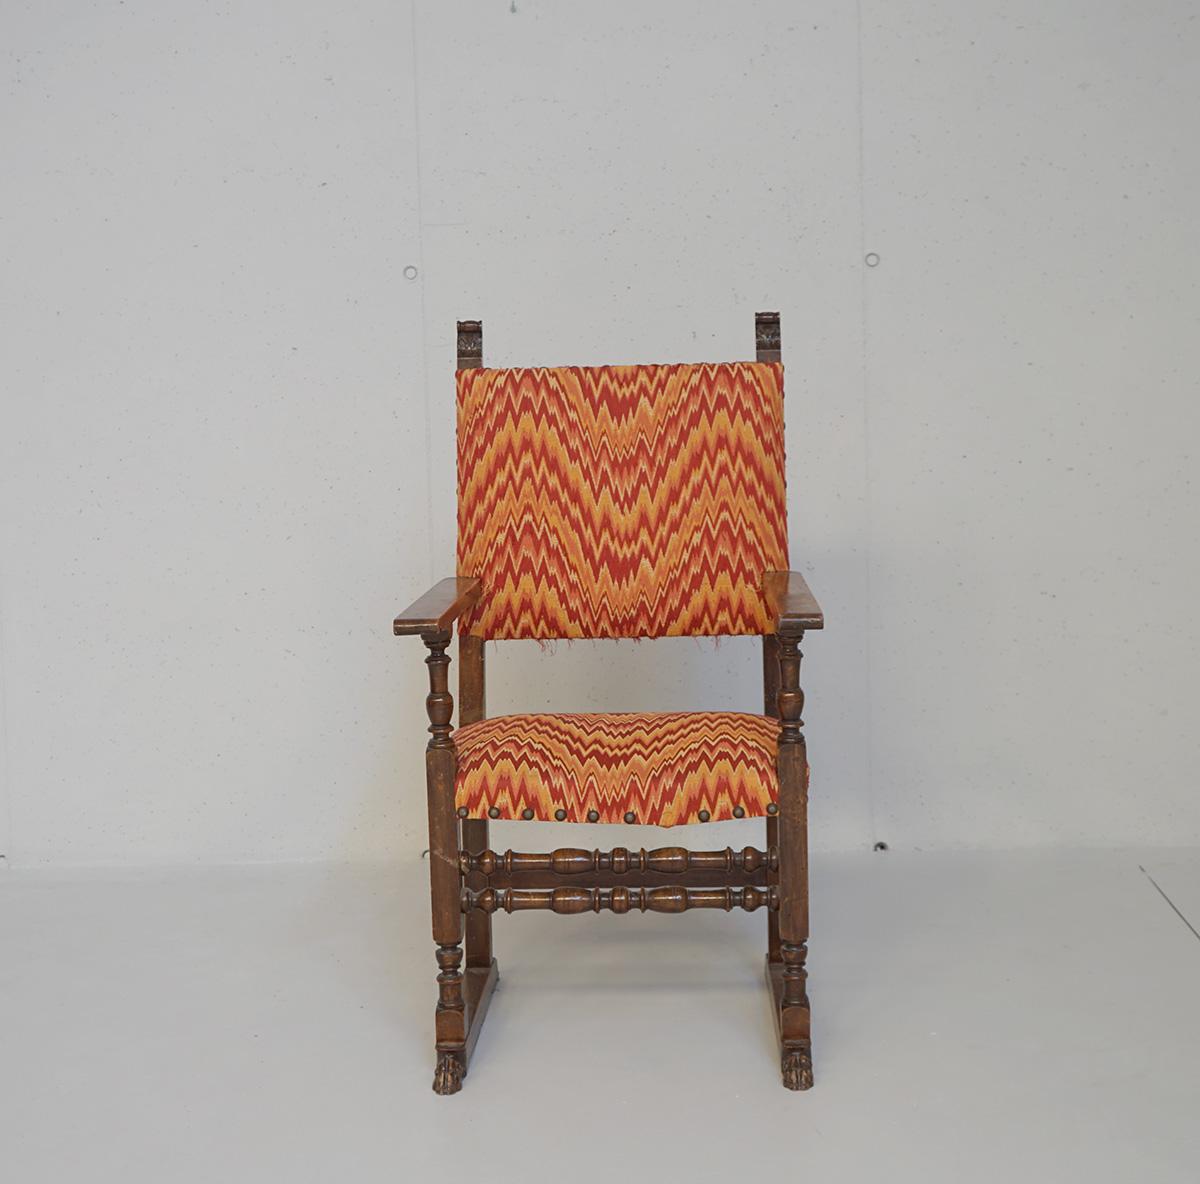 Set von vier Sesseln der späten 1800 im Stil des sechzehnten Jahrhunderts. Die Sessel sind aus massivem Nussbaumholz gefertigt, mit geraden Armlehnen und rundum gedrechselten Spulenschwellen. Die Füße sind freitragend und mit einer